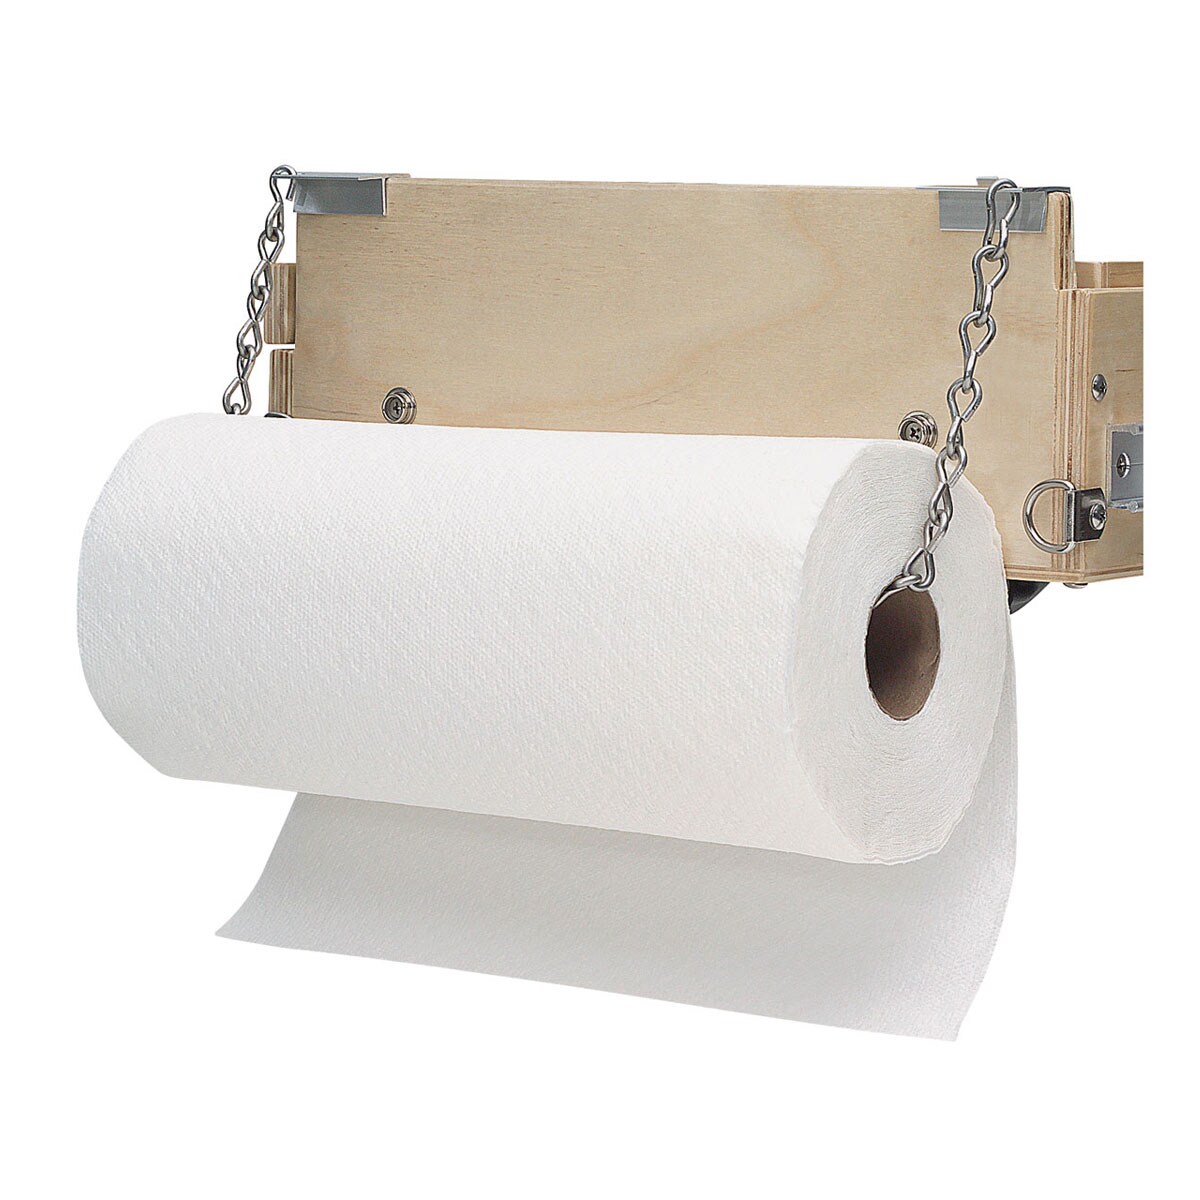 Guerrilla Painter Guerrilla Box Accessories - Paper Towel Holder